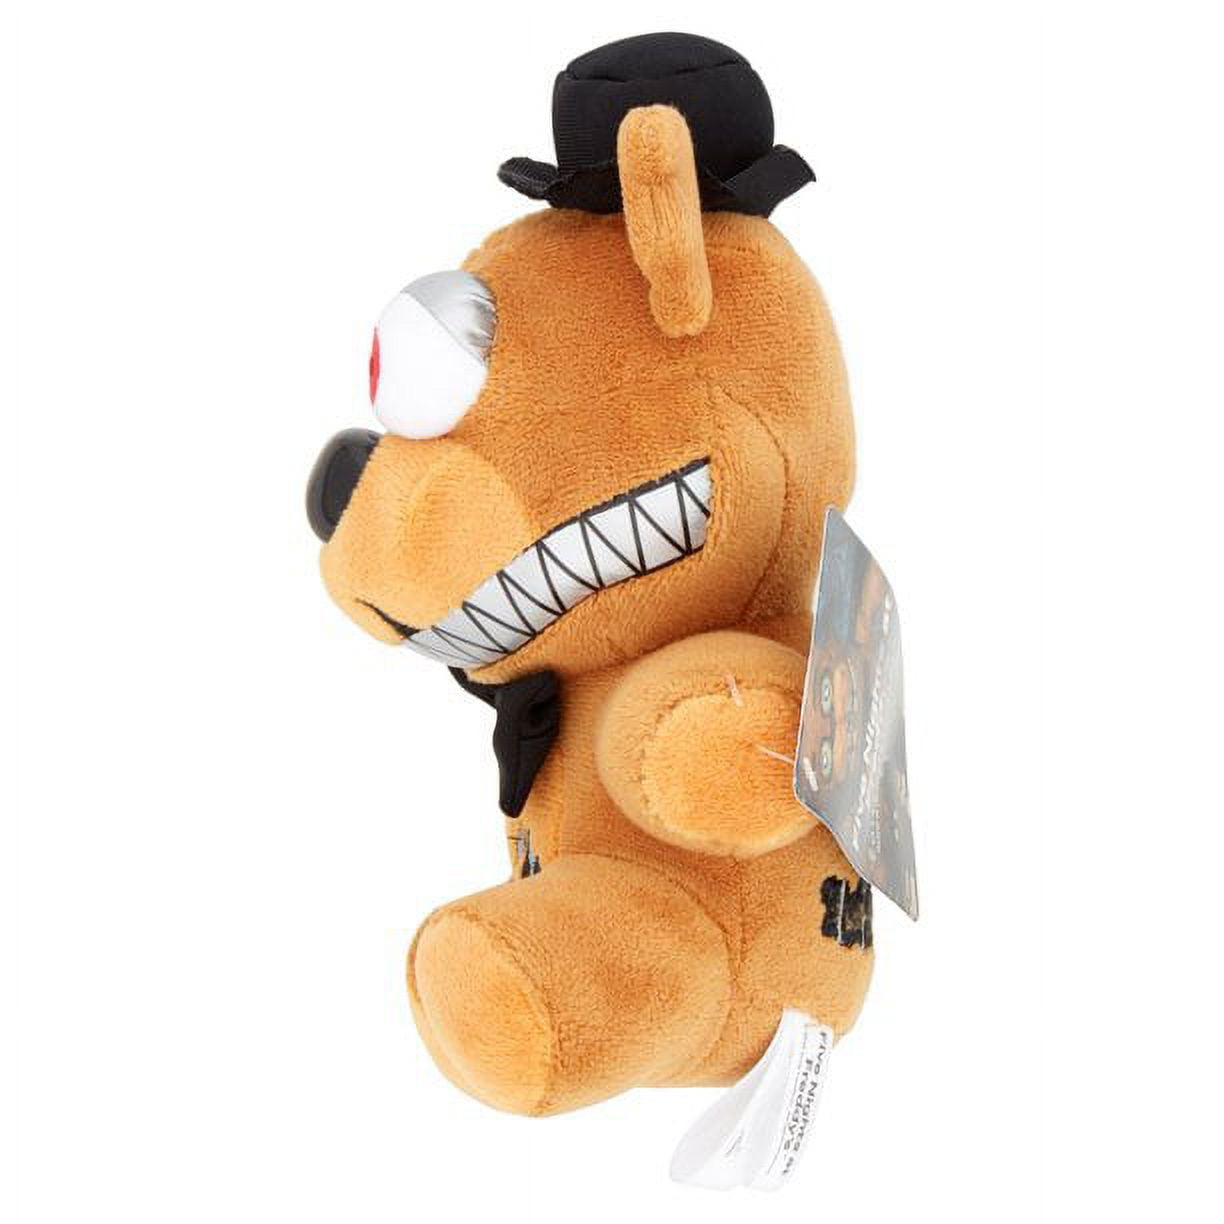 25cm FNAF Freddy Fazbear Plush Toys Golden Bear Nightmare Cupcake Foxy  Balloon Boy Clown Stuffed Dolls